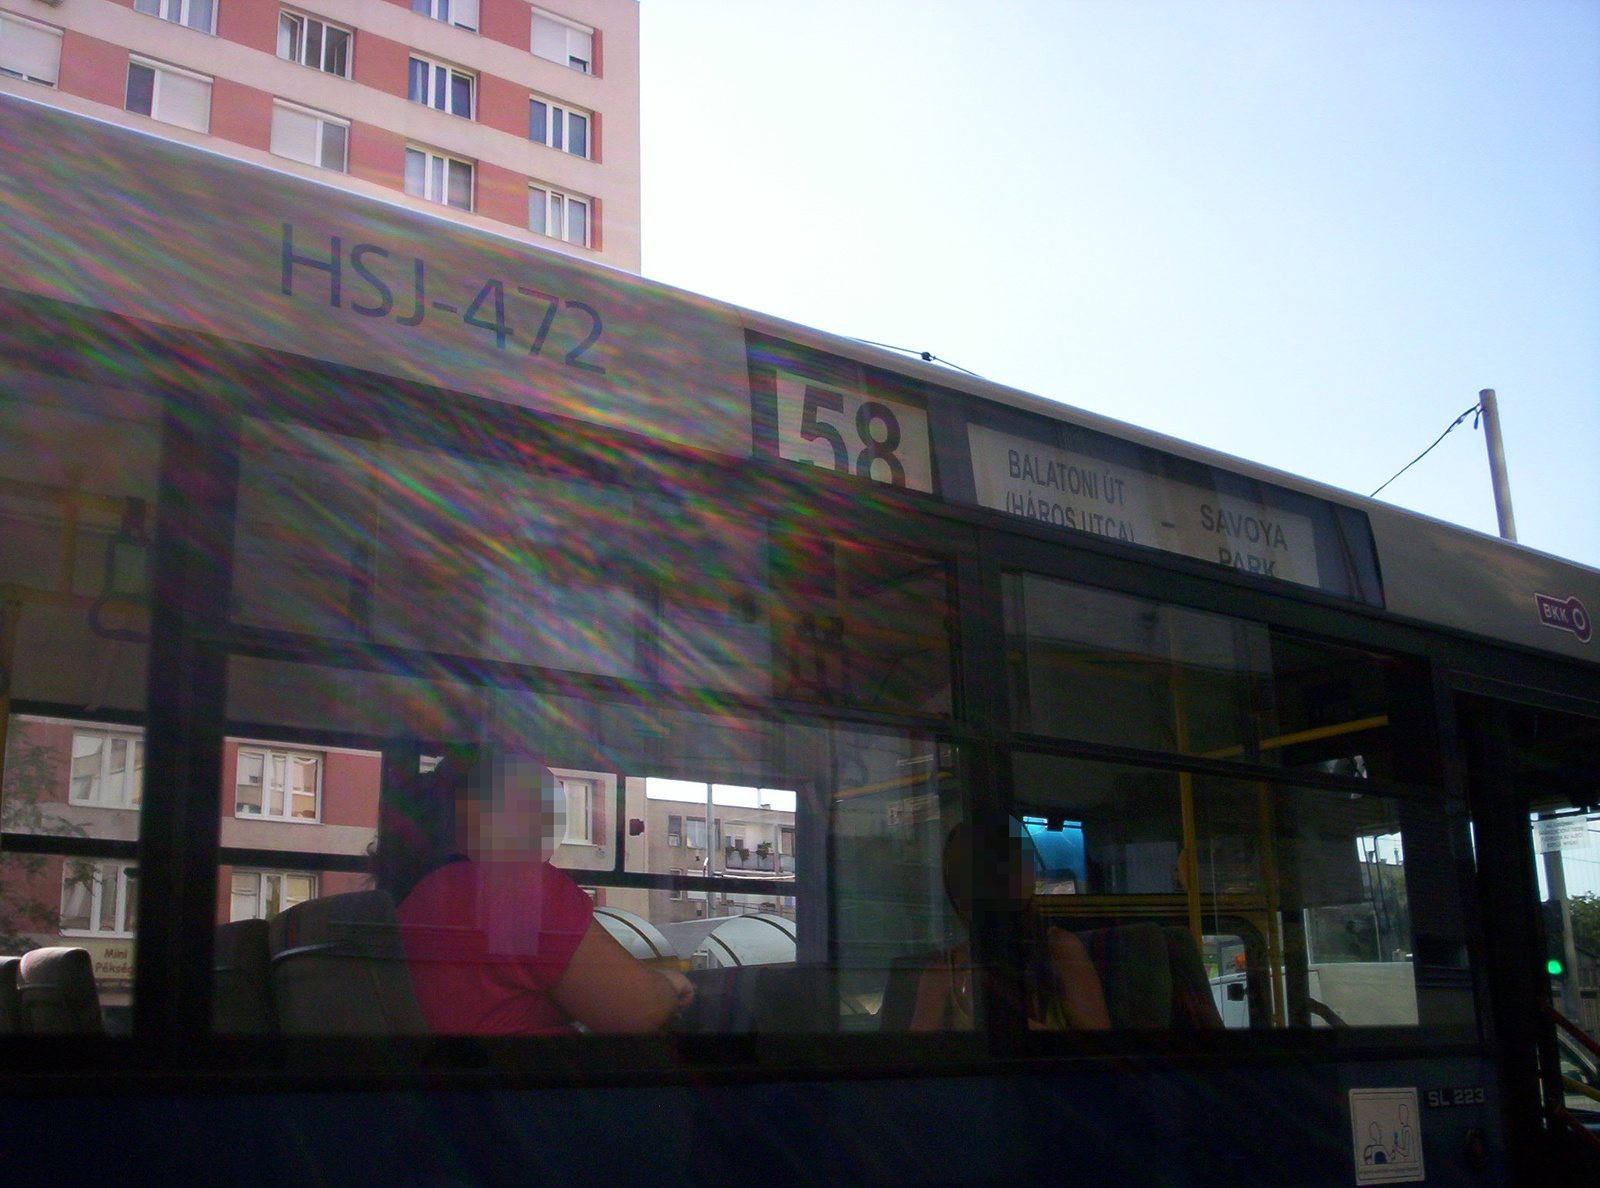 HSJ-472 58 Leányka utcai ltp.